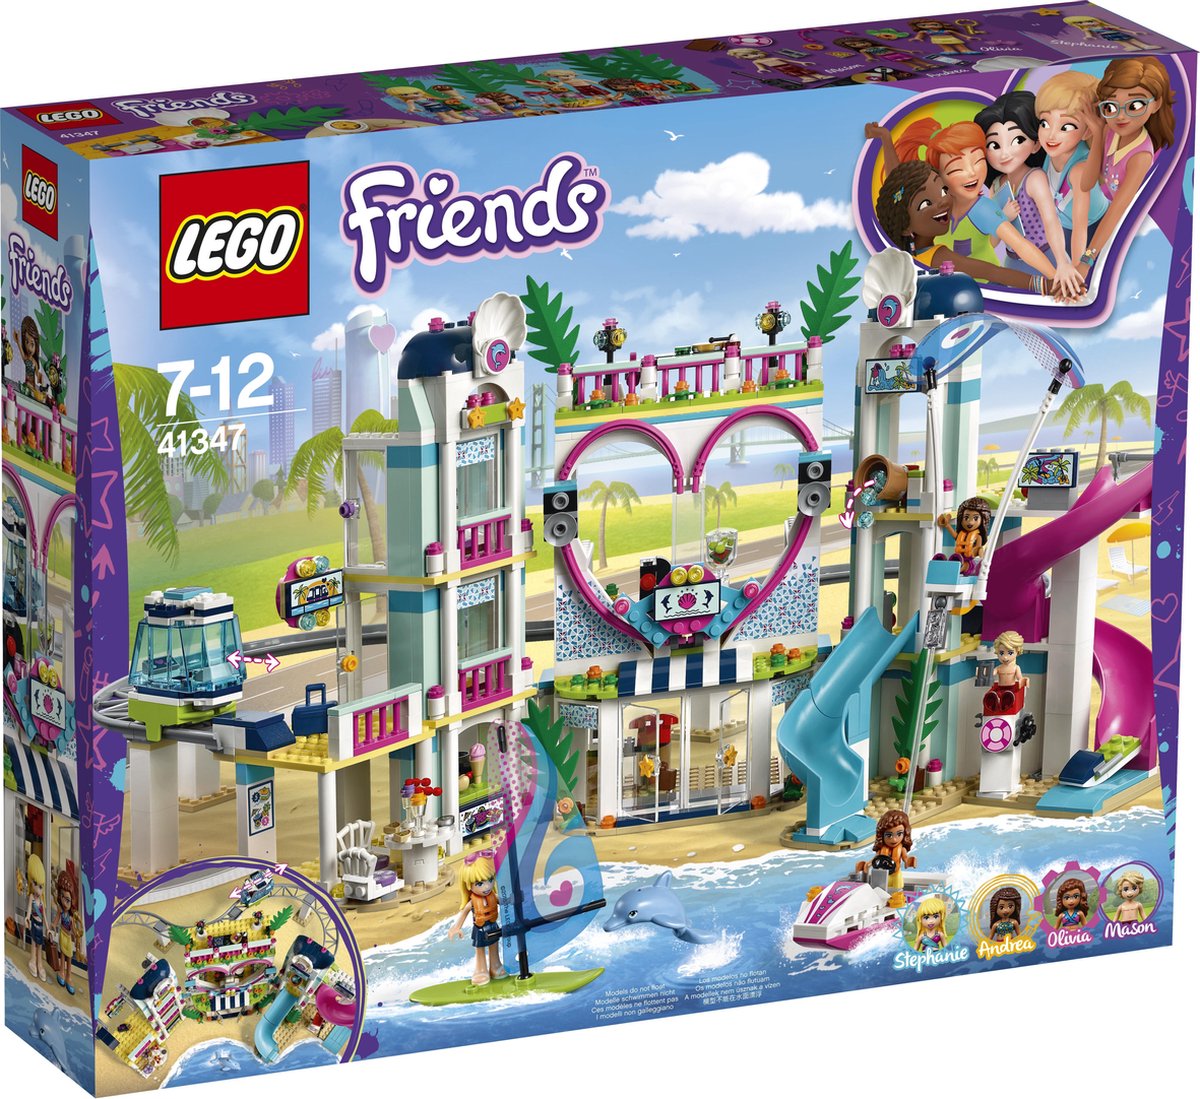 LEGO Friends Resort - 41347 bol.com